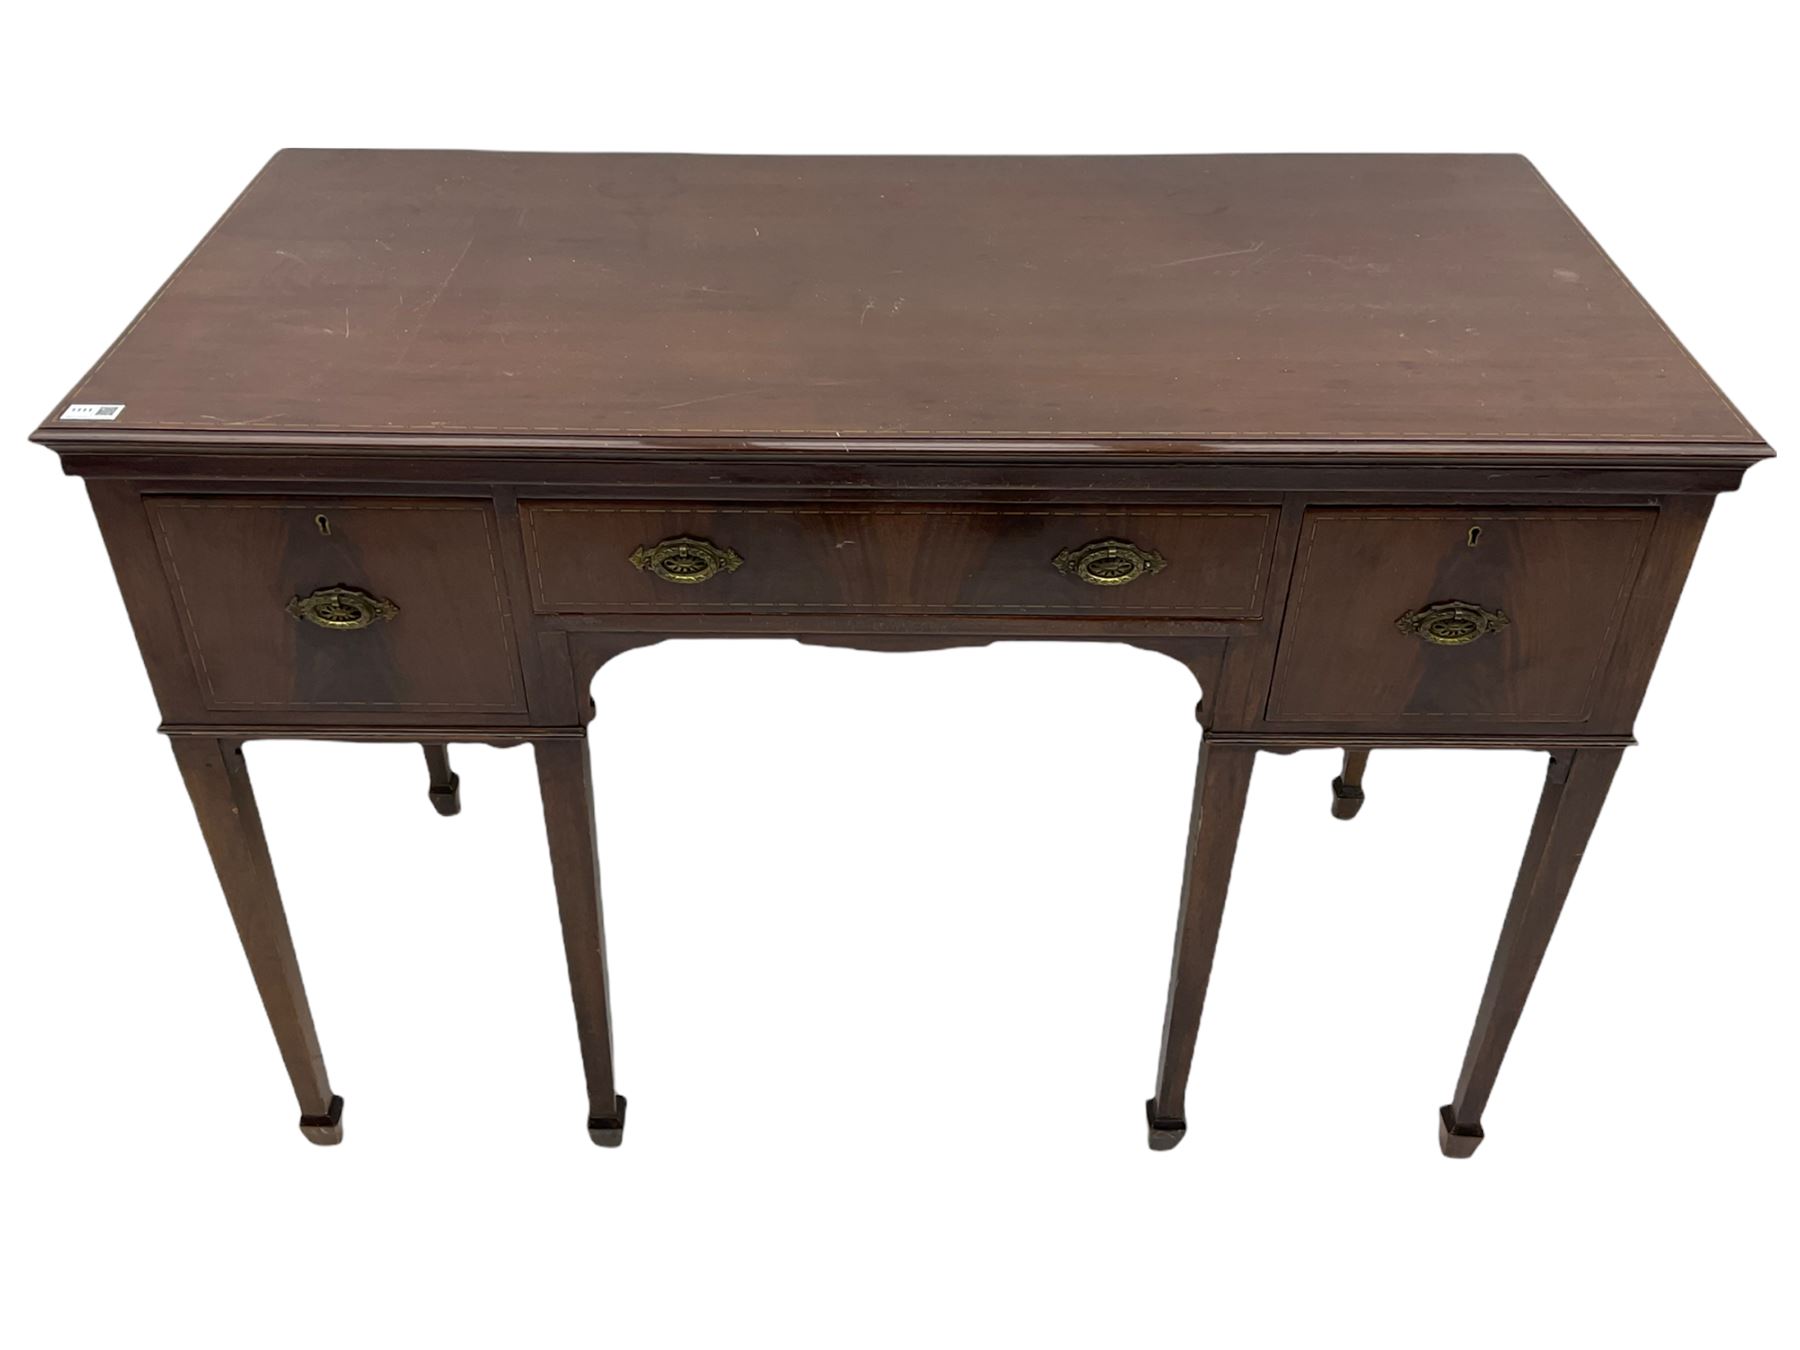 Edwardian inlaid mahogany kneehole side table - Image 5 of 7